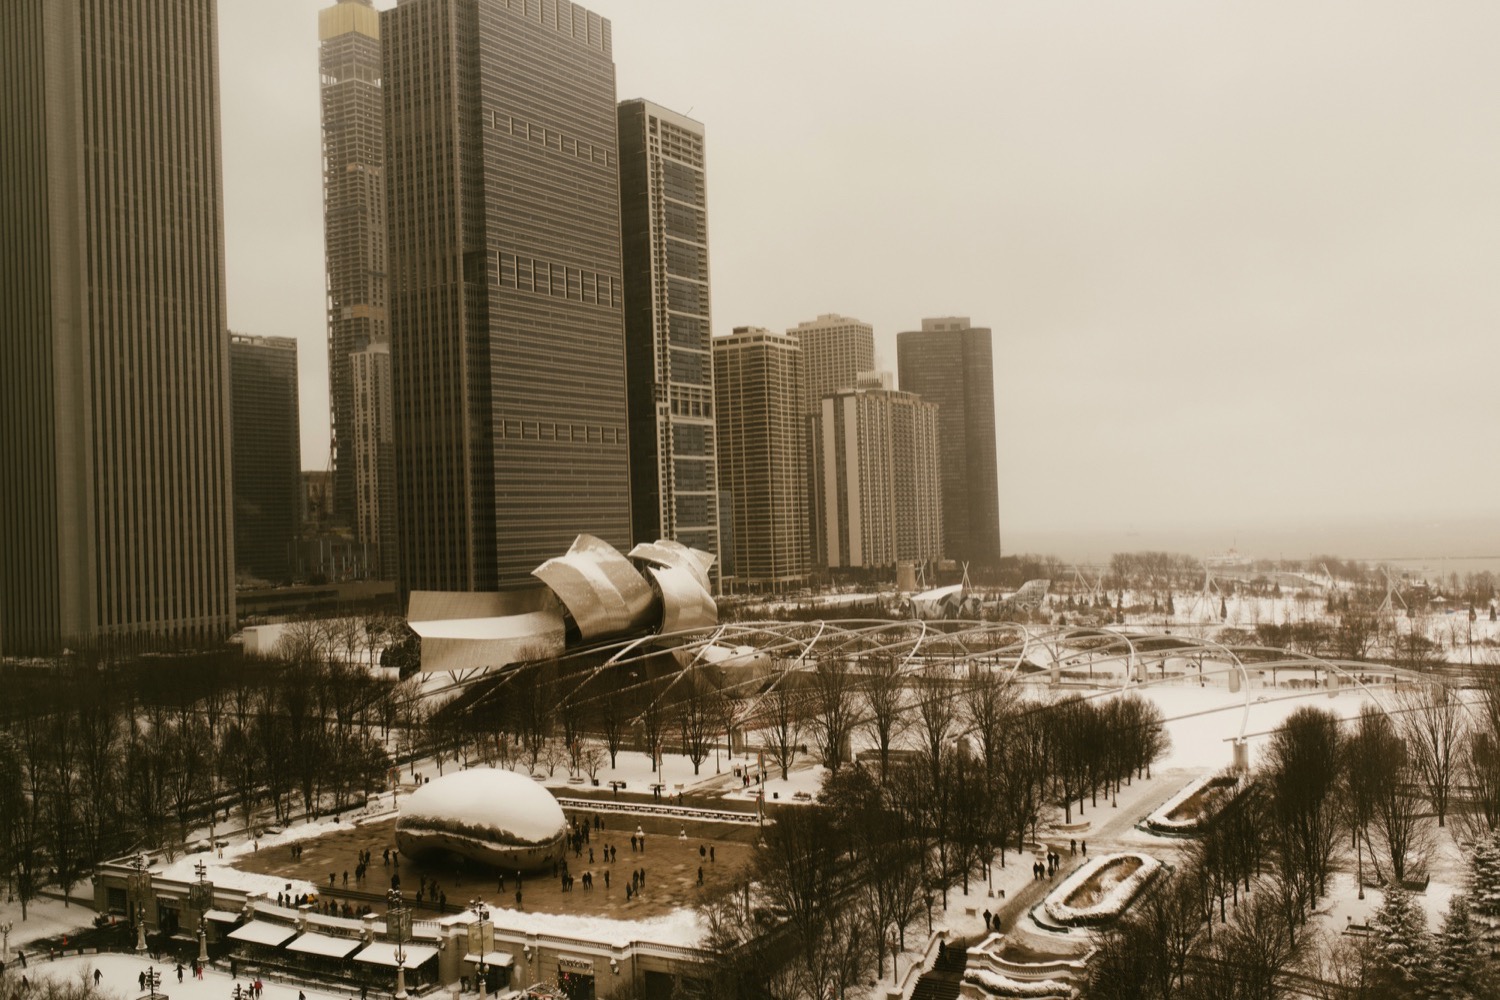 Winter Chicago skywalk snowy view.